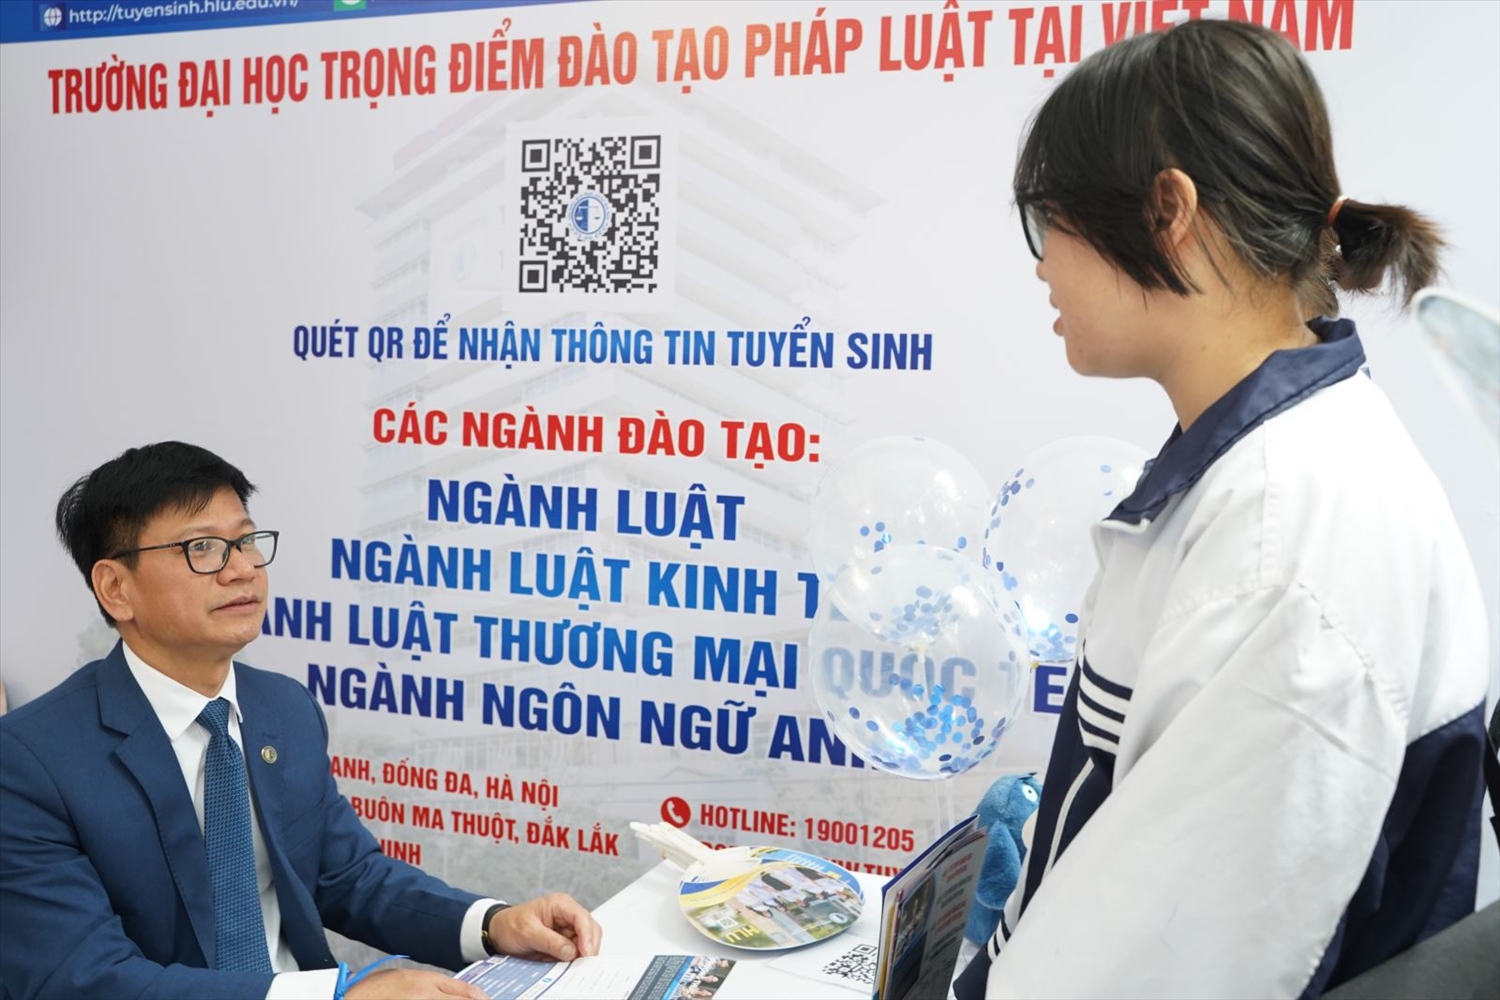 TS Nguyễn Triều Dương - Trưởng phòng Phòng Đào tạo đại học đang giải thích thắc mắc cho học sinh về phương thức tuyển sinh của Trường